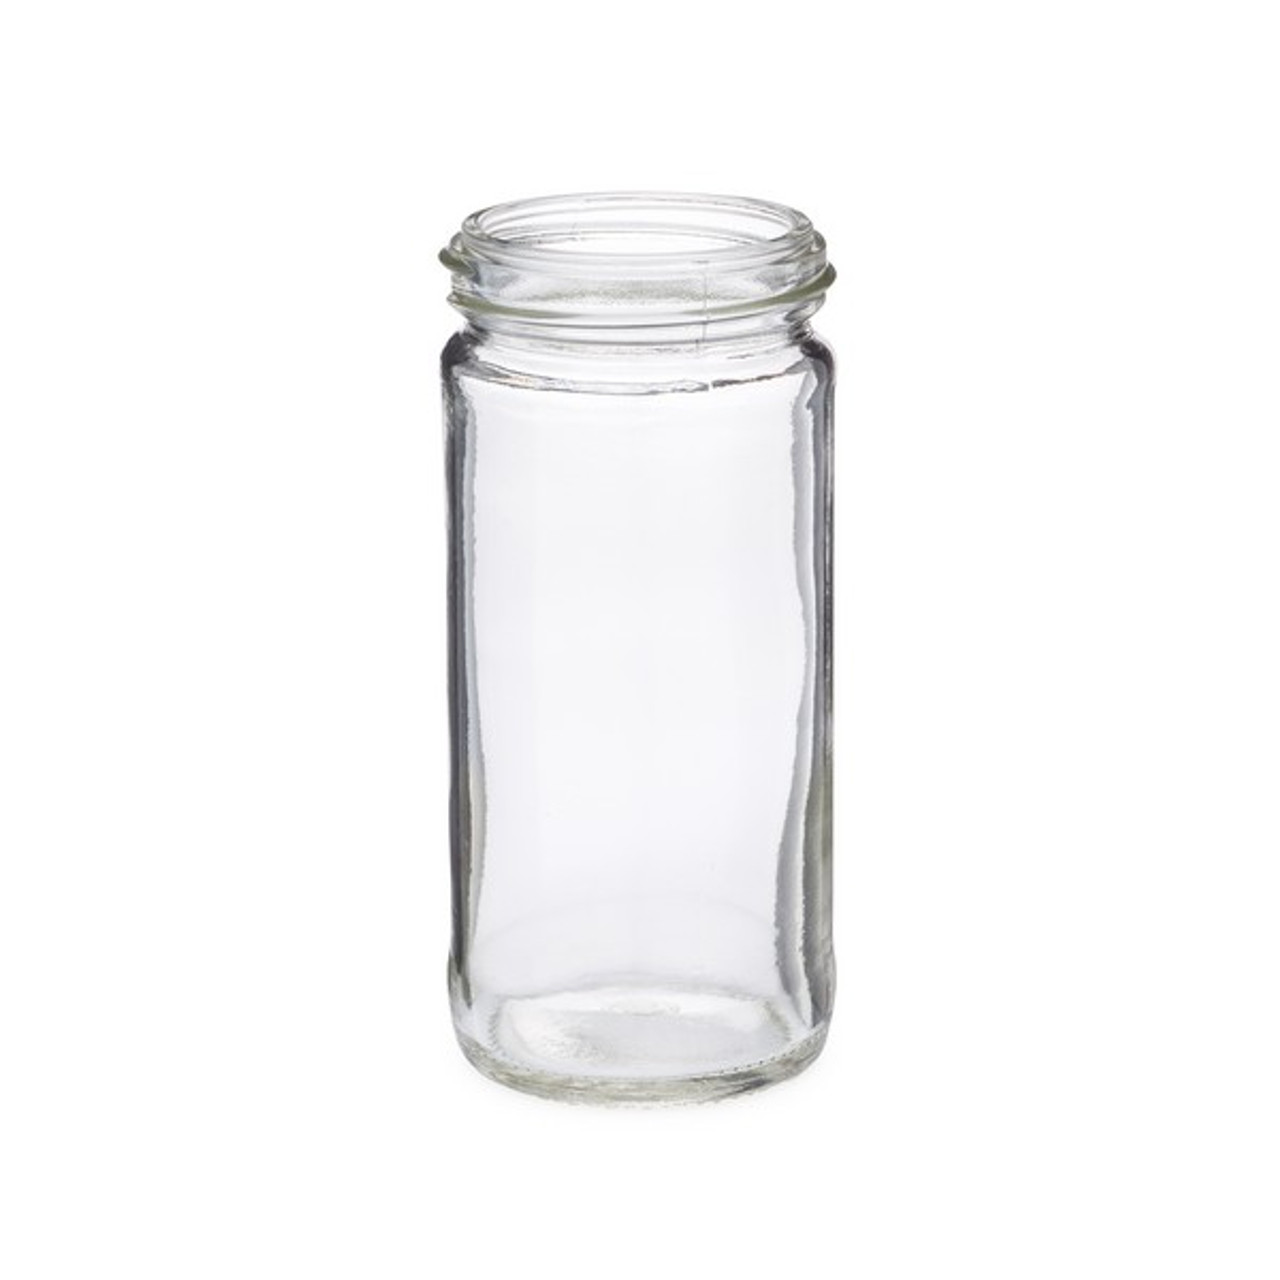 4 oz. Glass Spice Jar